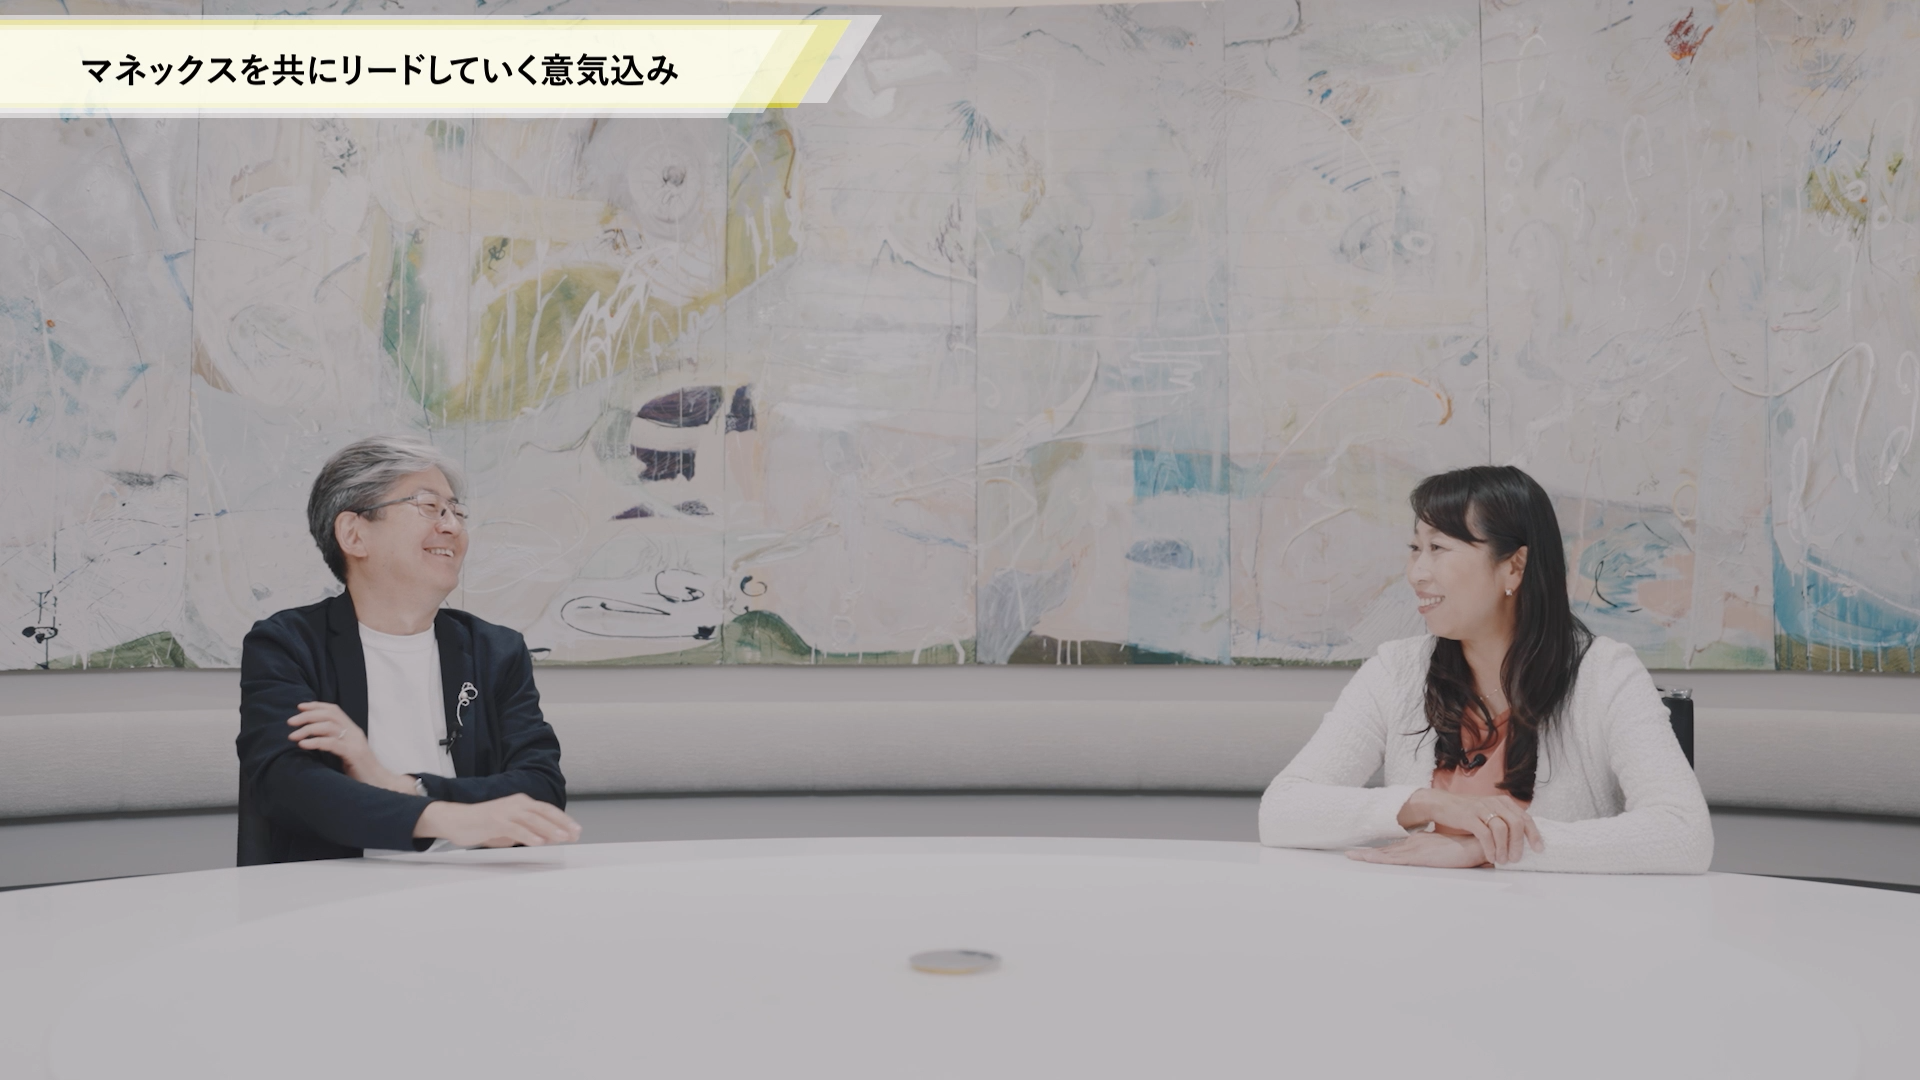 25周年と未来のマネックスについて、創業者の松本とCEOの清明が語る動画です。